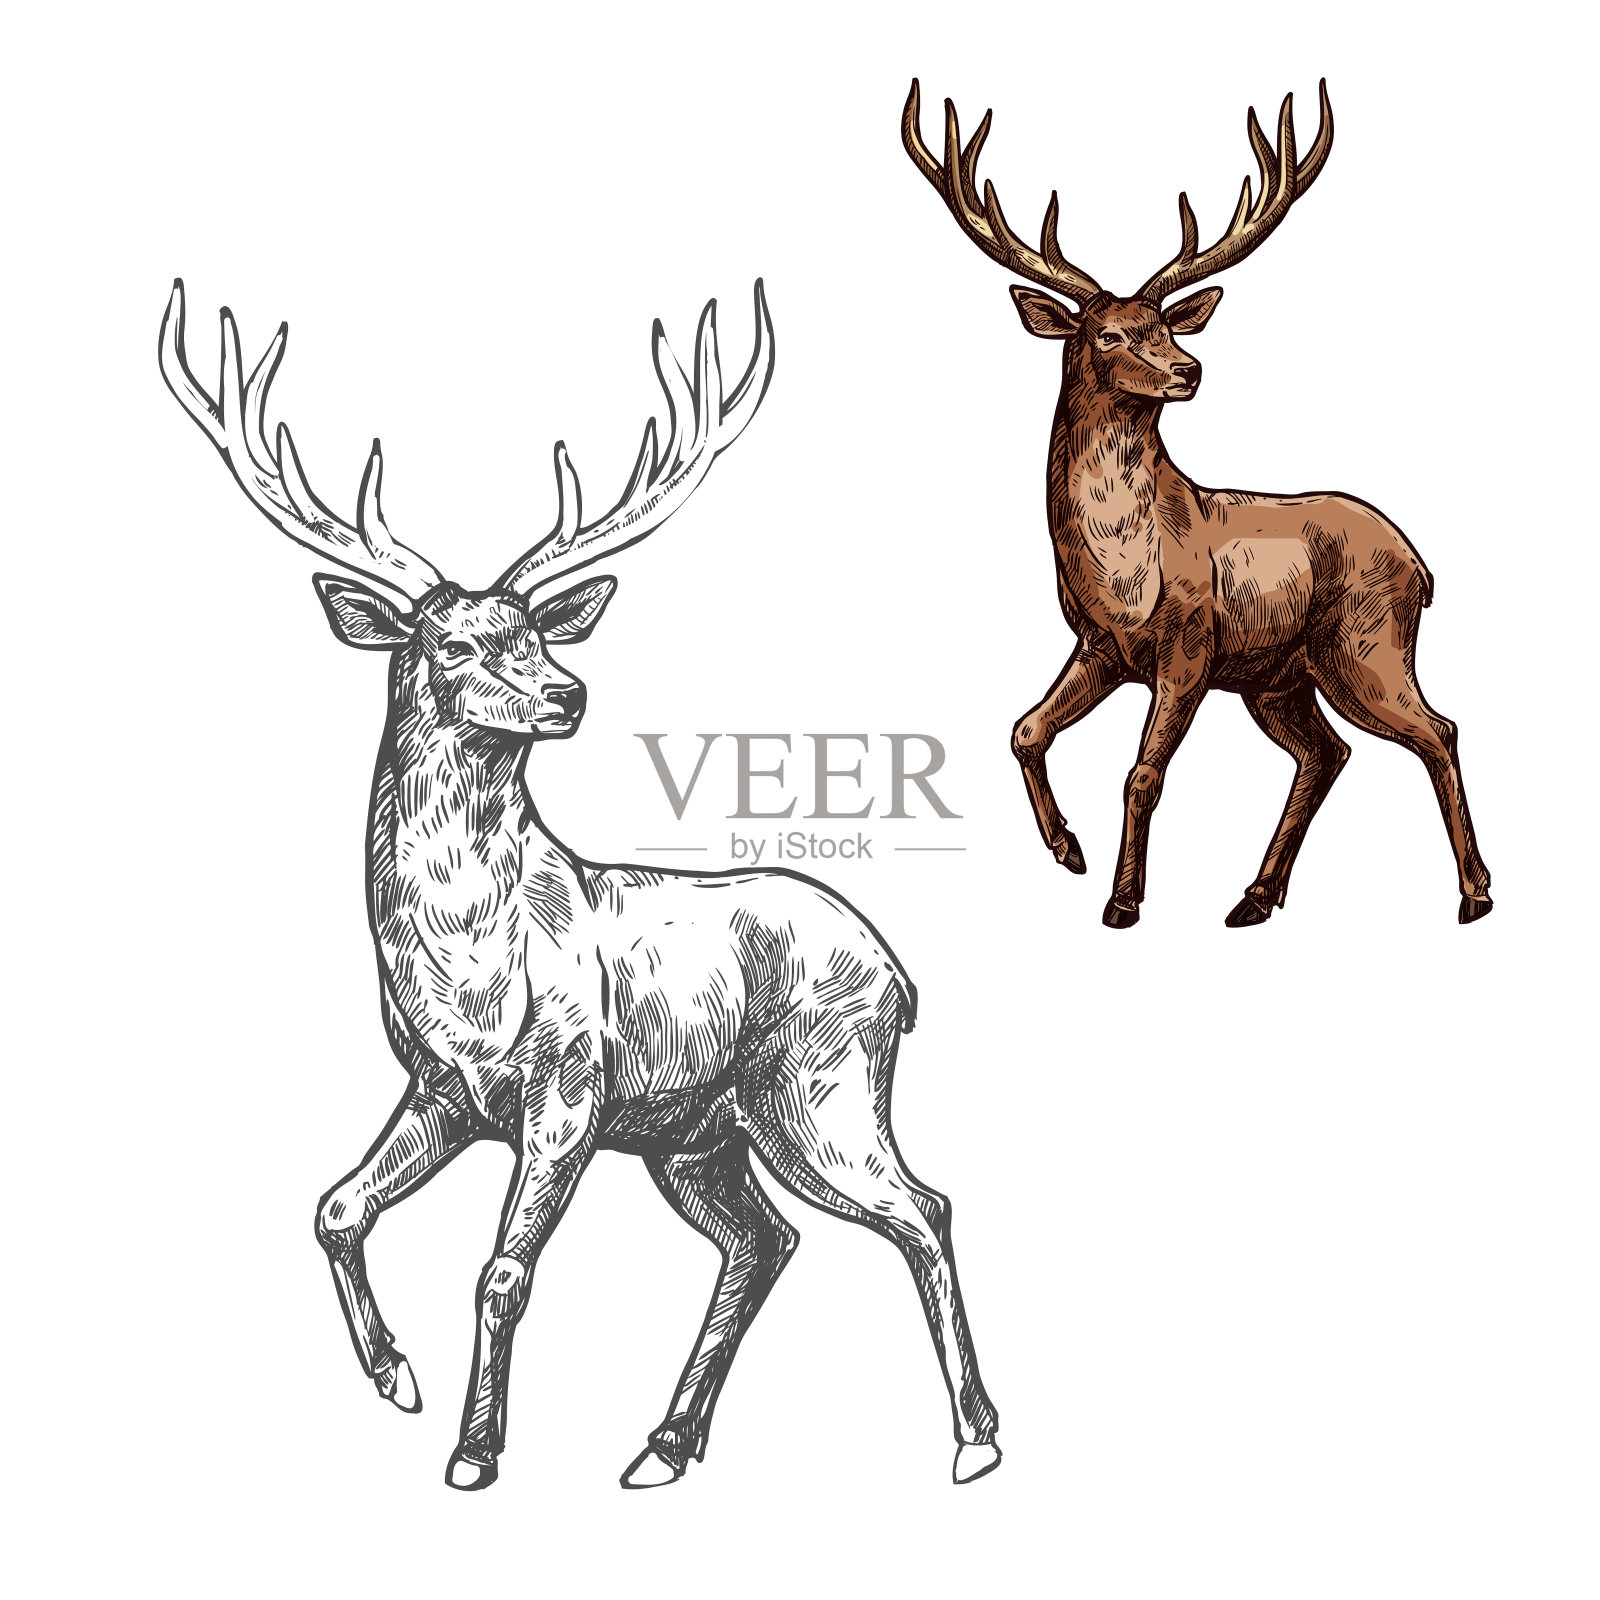 鹿、驯鹿或麋鹿等野生哺乳动物素描设计元素图片